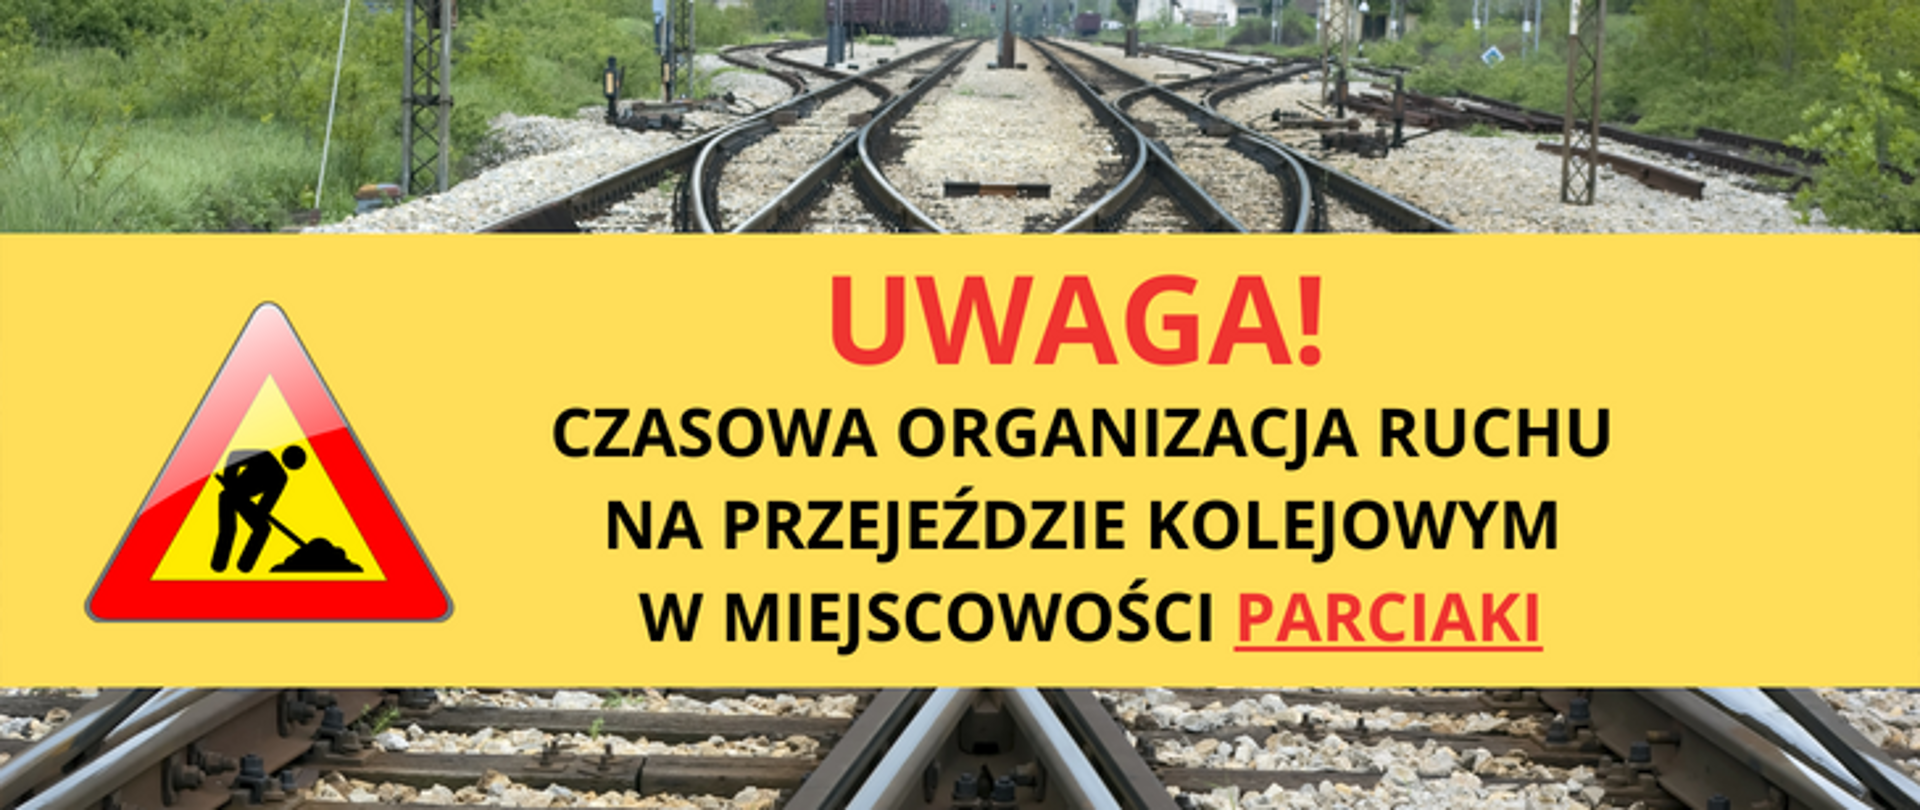 Grafika informująca o wprowadzeniu czasowej organizacji ruchu na przejeździe kolejowym w Parciakach.